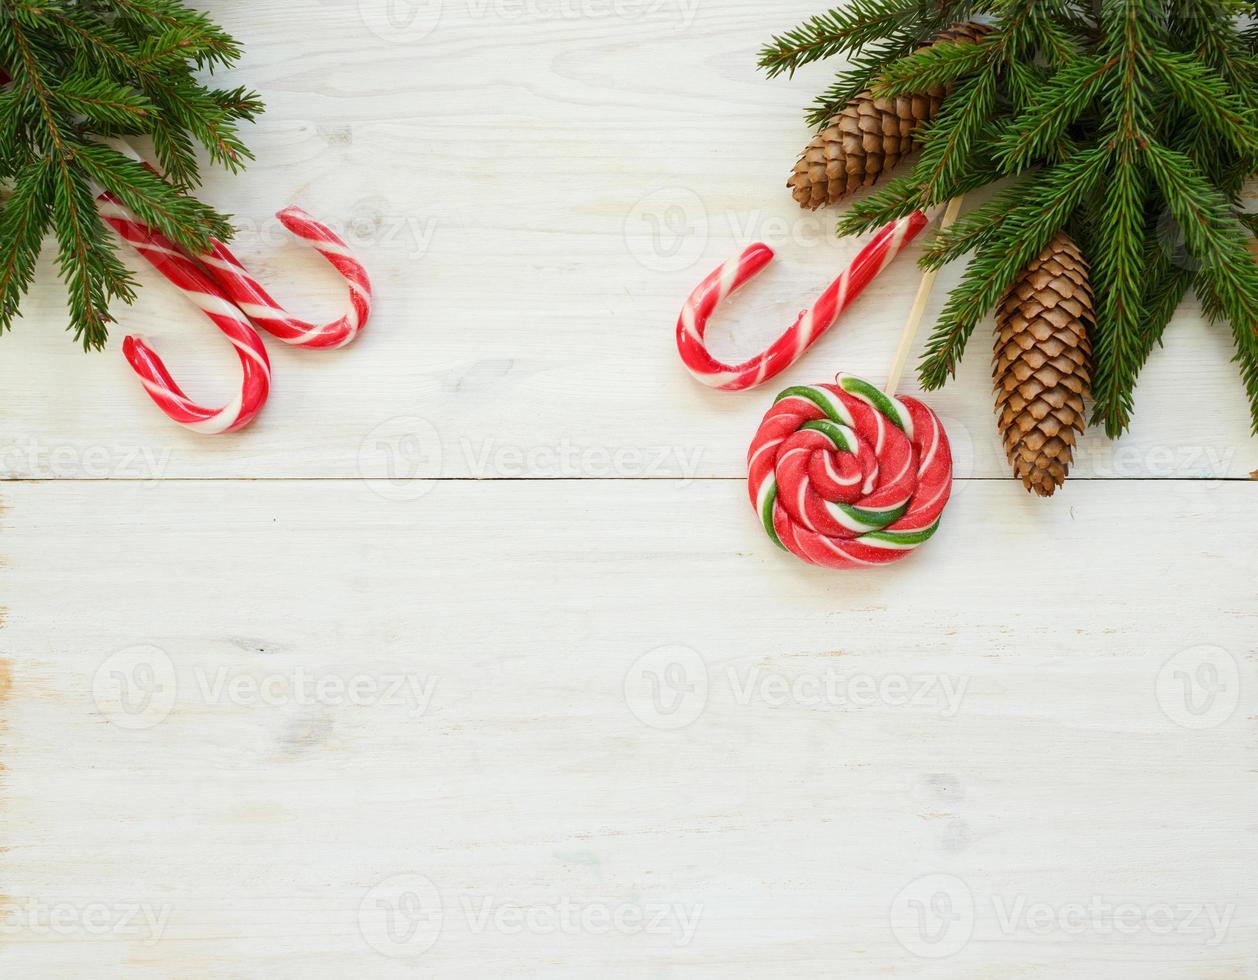 jul gräns med gran träd grenar med koner och godis sockerrör på vit trä- styrelser foto